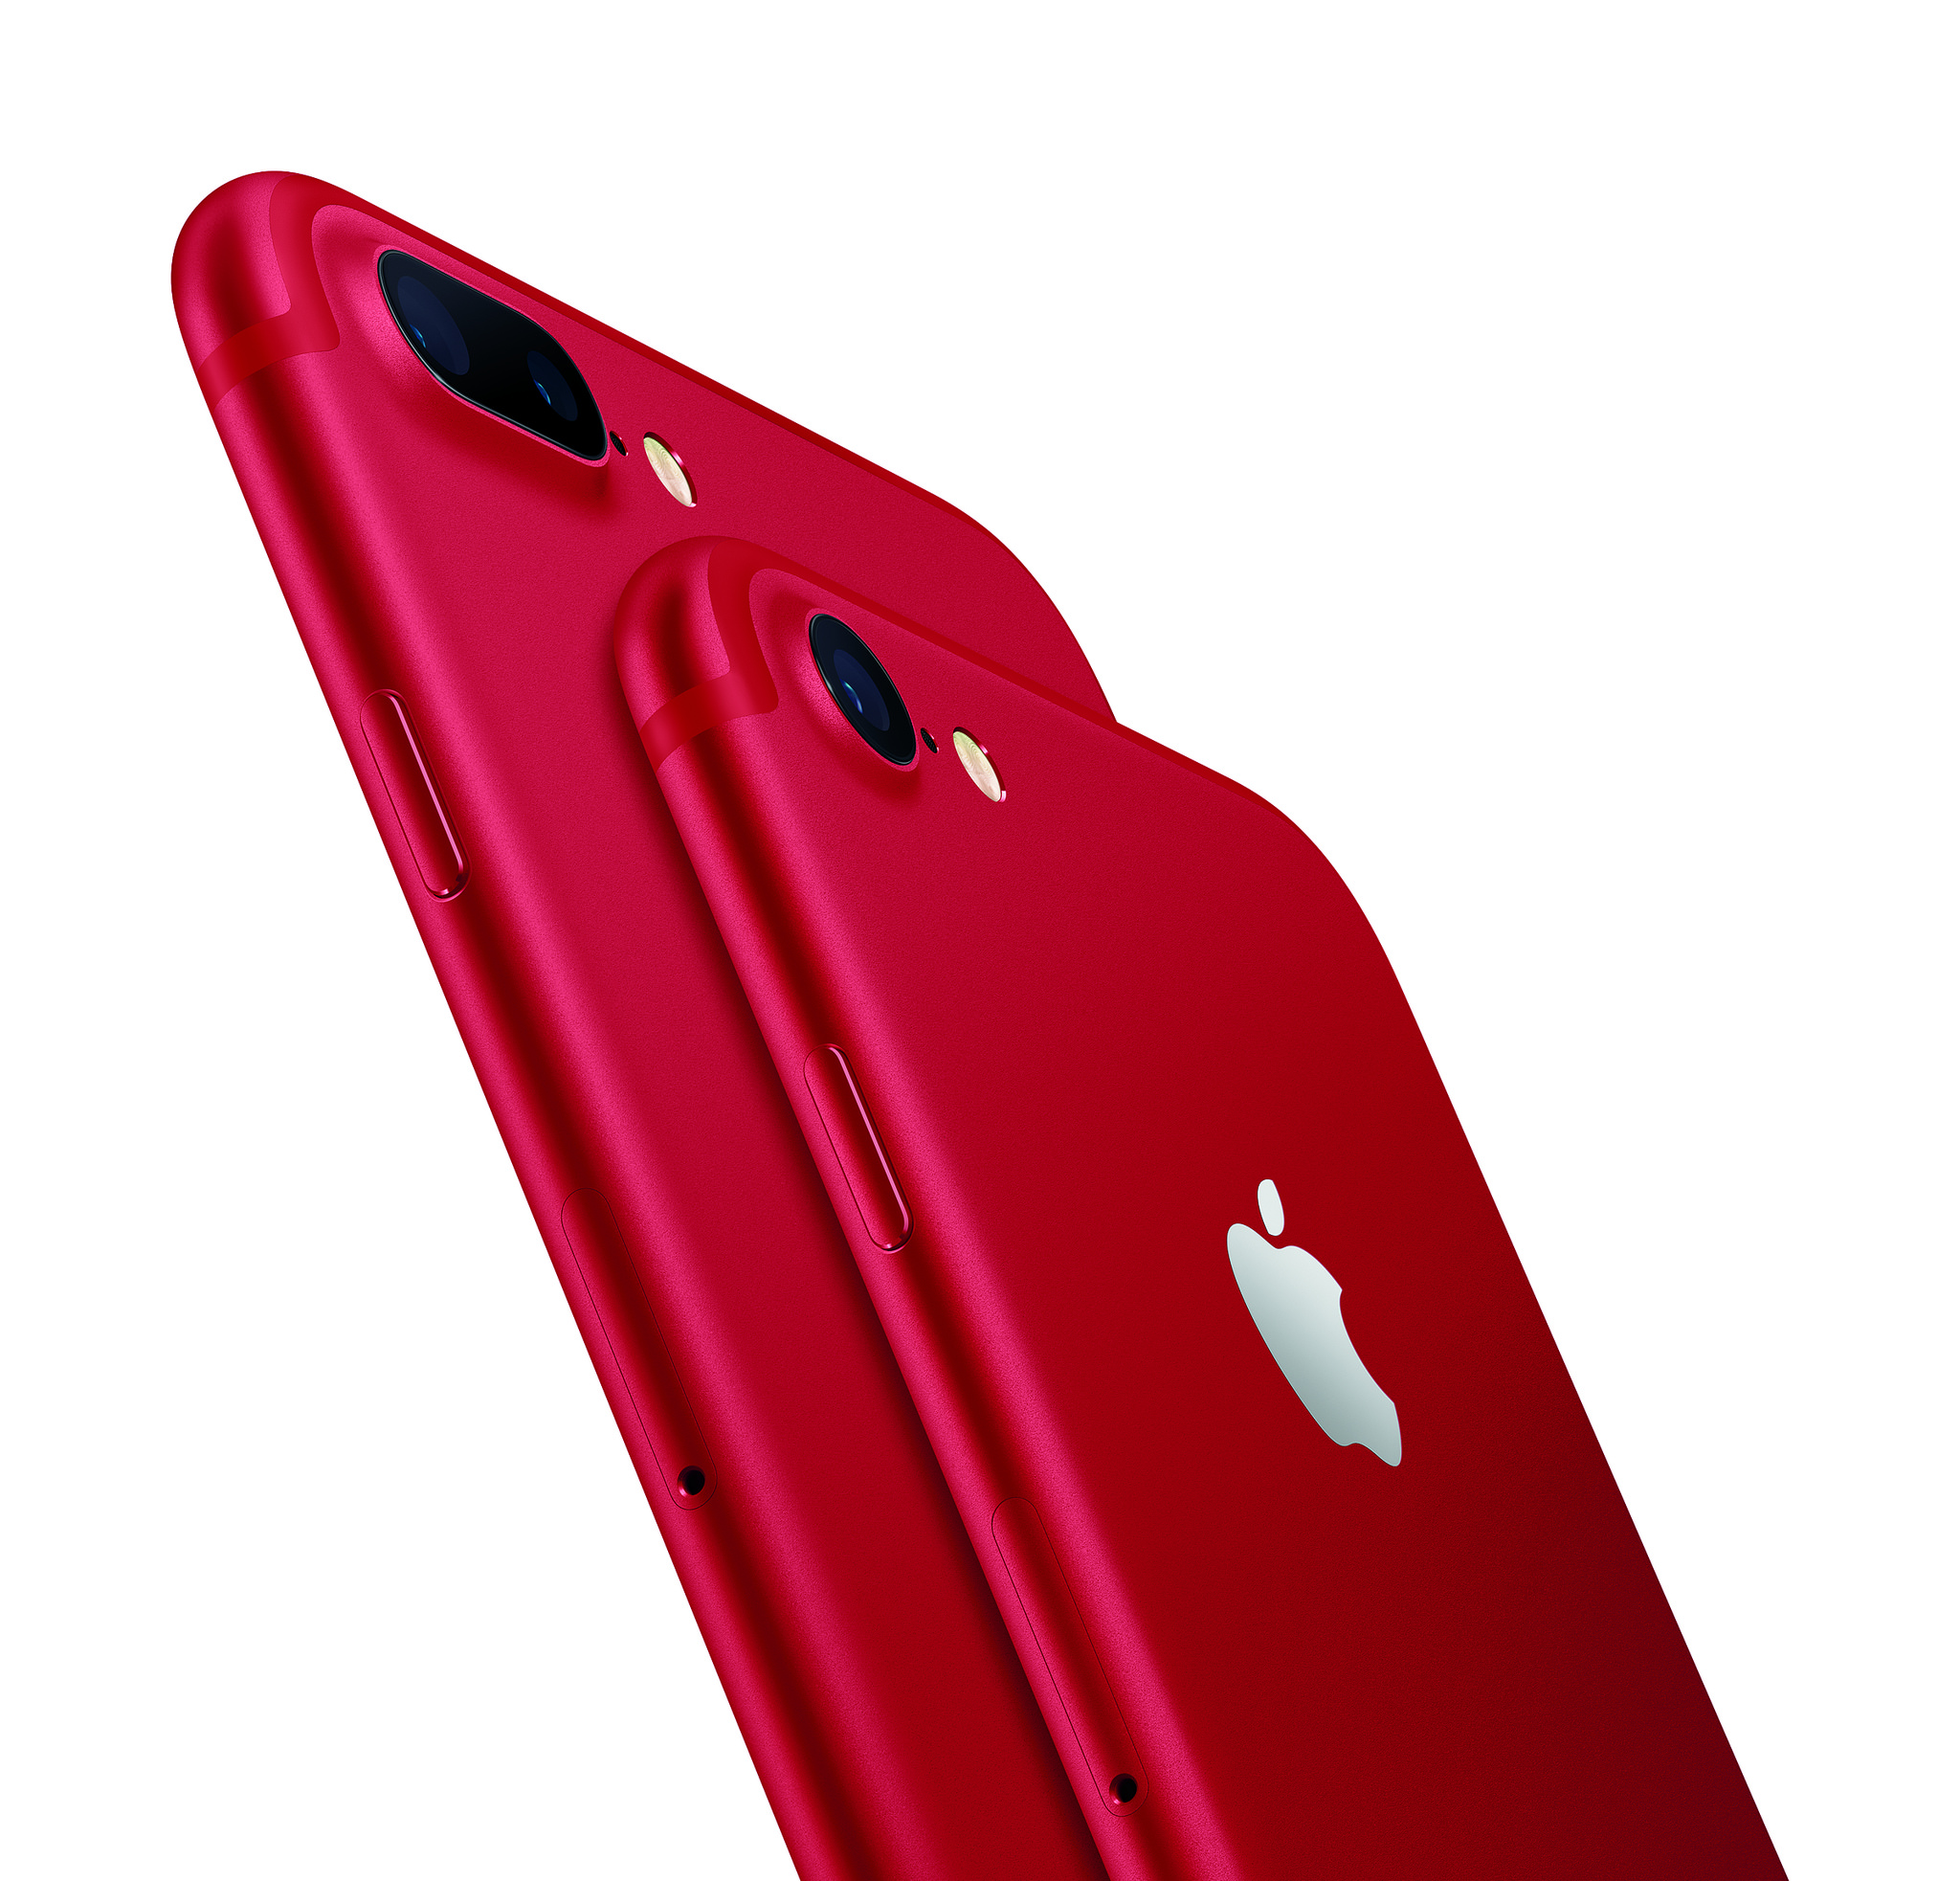 [iPhone] iPhone 7 に (PRODUCT)RED が登場！レッド好きにはたまらない機種になりそう